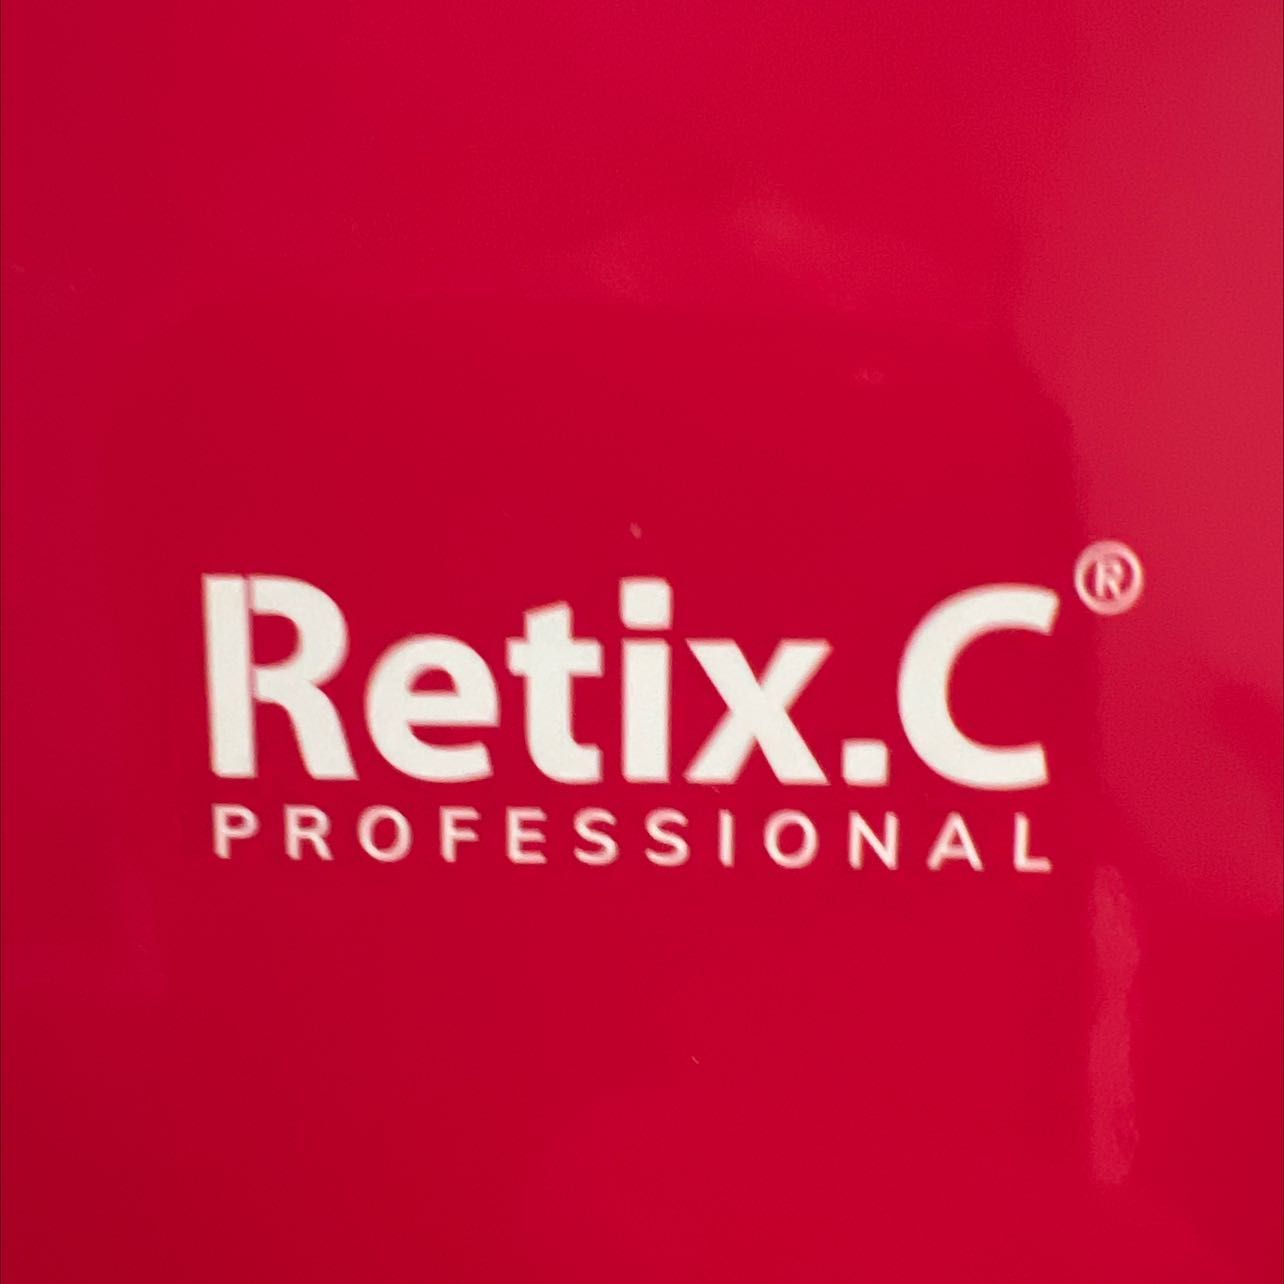 Portfolio usługi Peeling medyczny Retix C. Nowa skóra